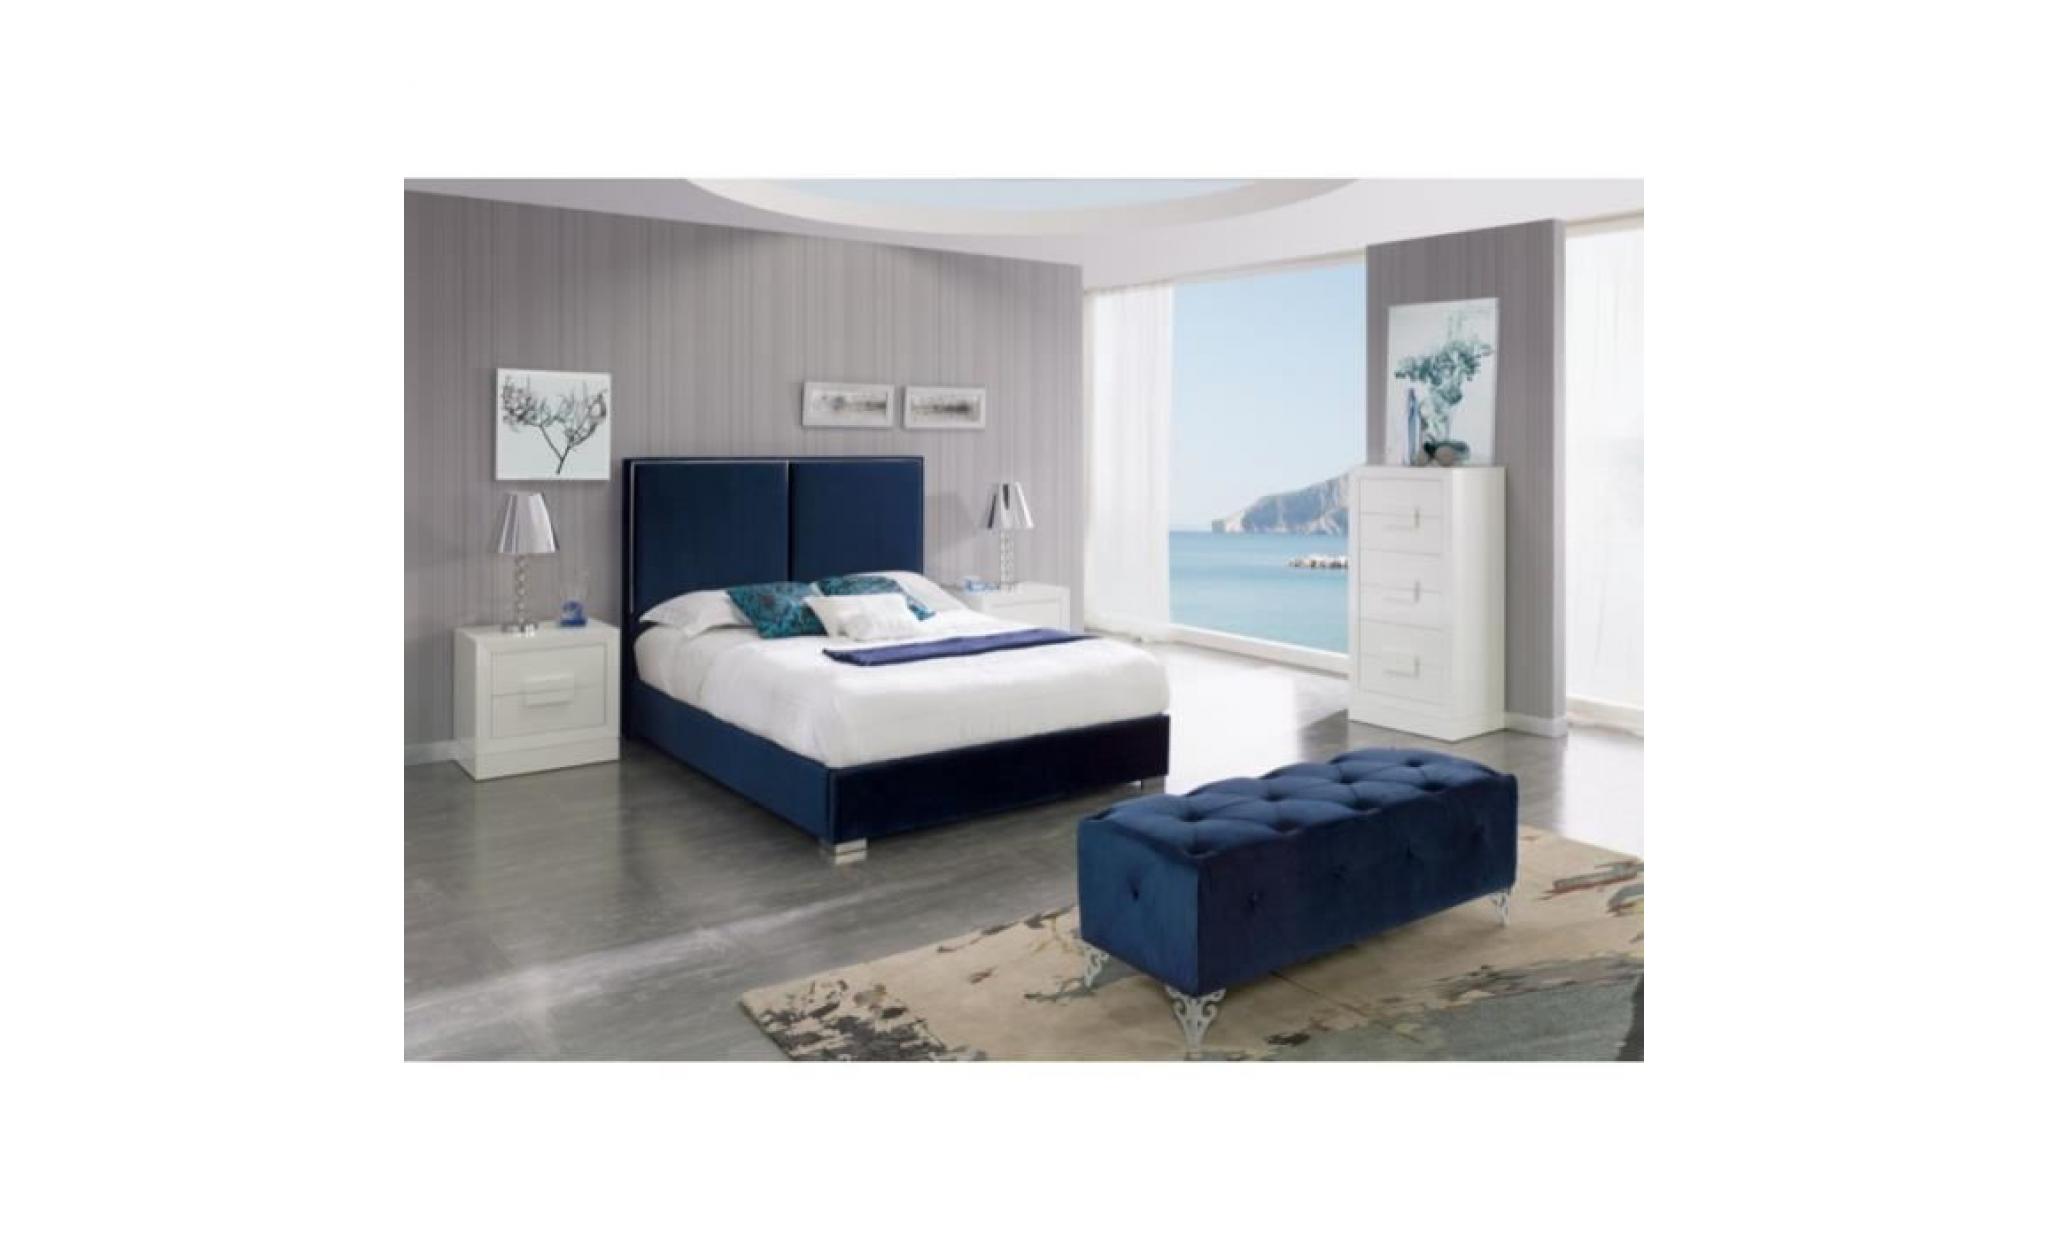 tête de lit kinley en velours bleu marine pour lit double   l 152 x h 118 pas cher